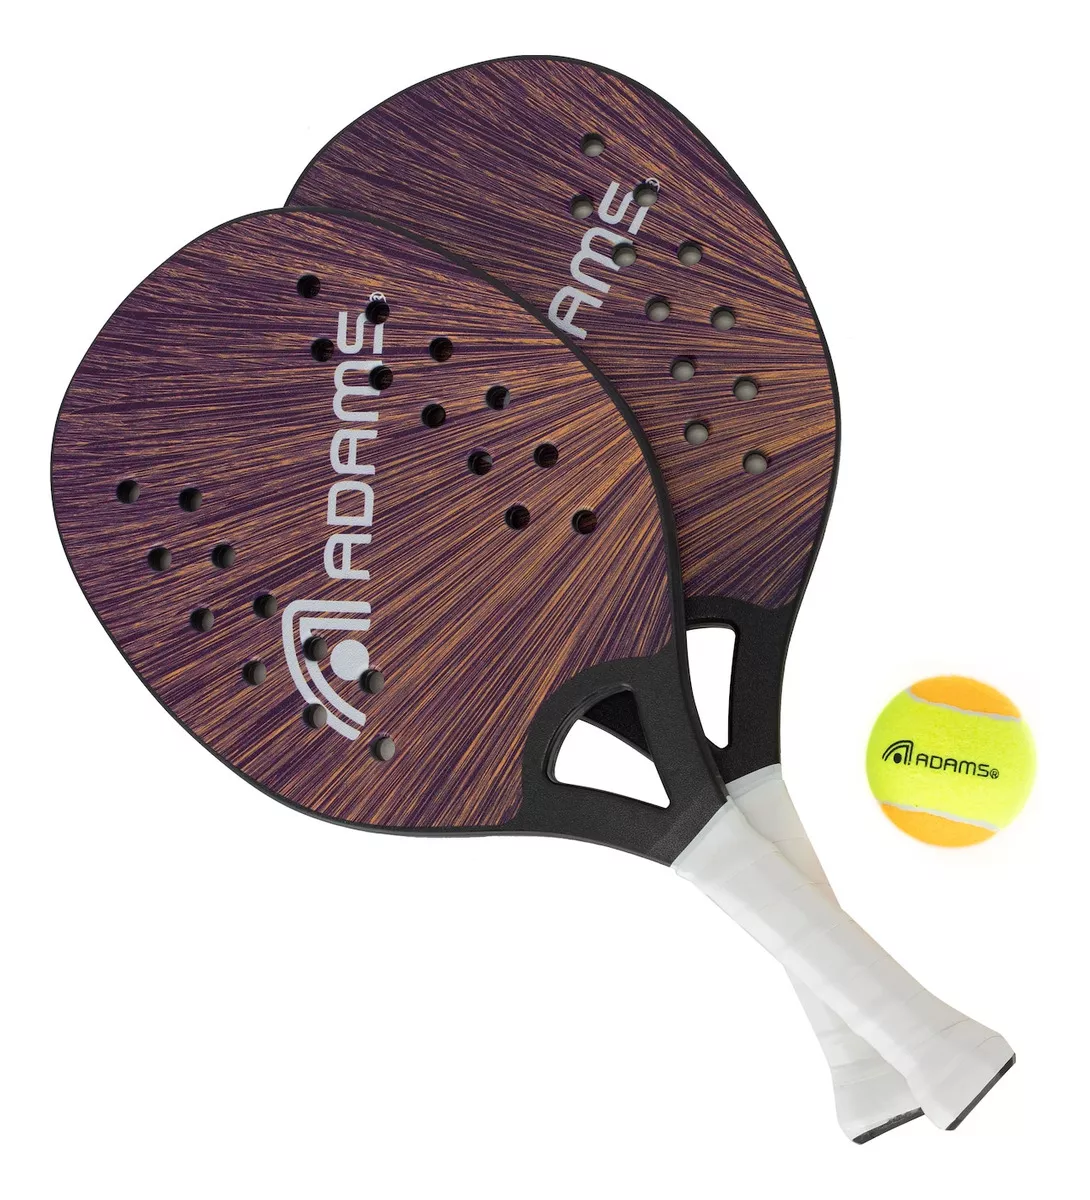 Segunda imagem para pesquisa de raquete de squash adams power 60